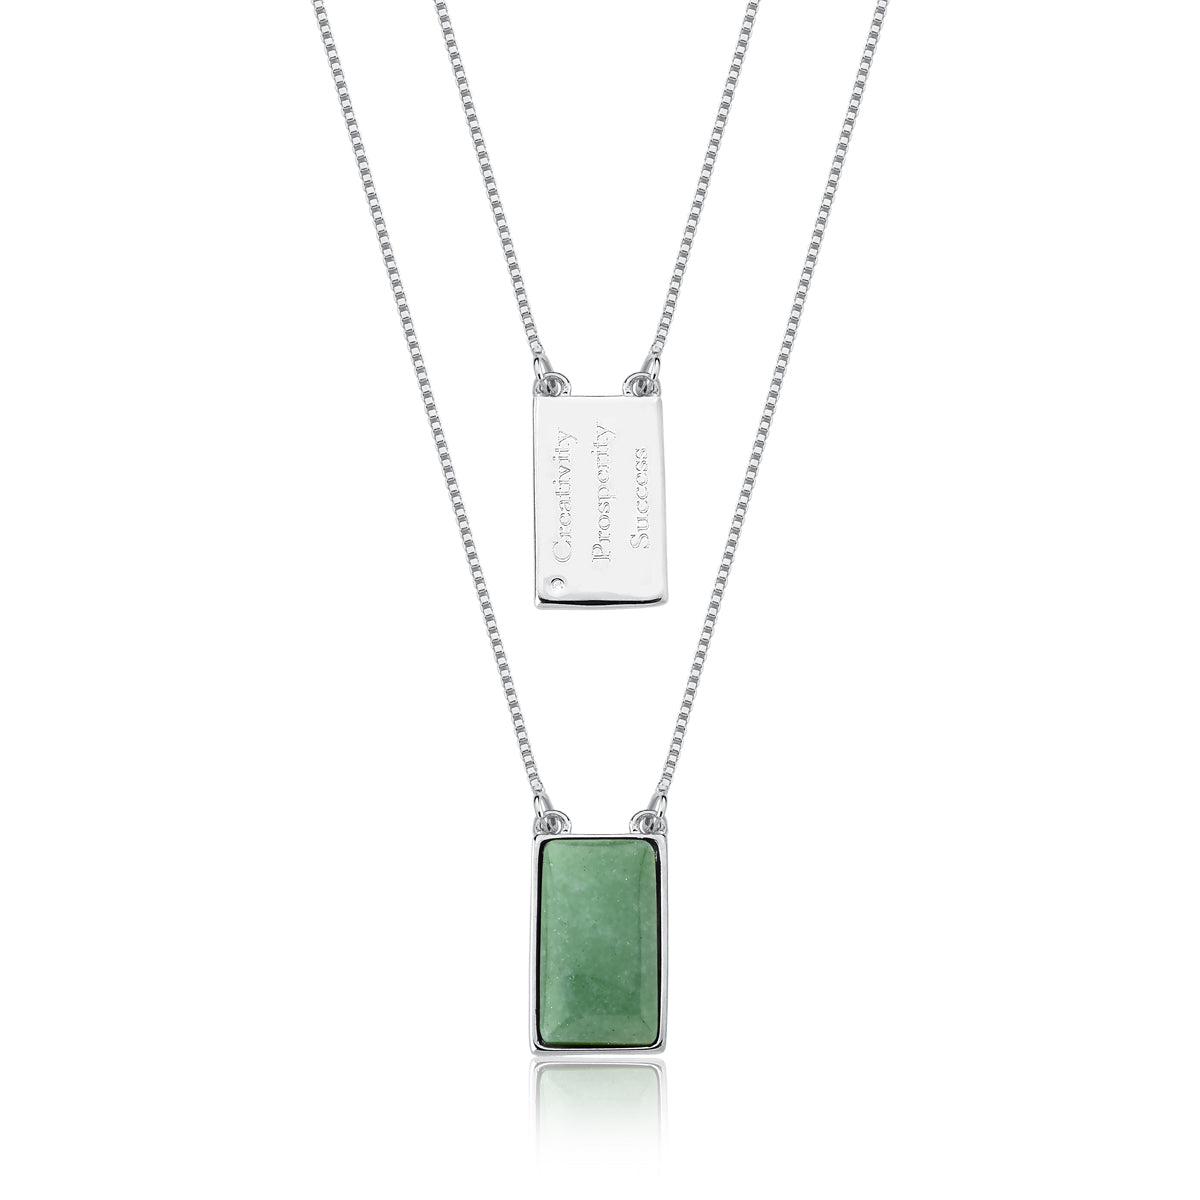 Green quartz necklace